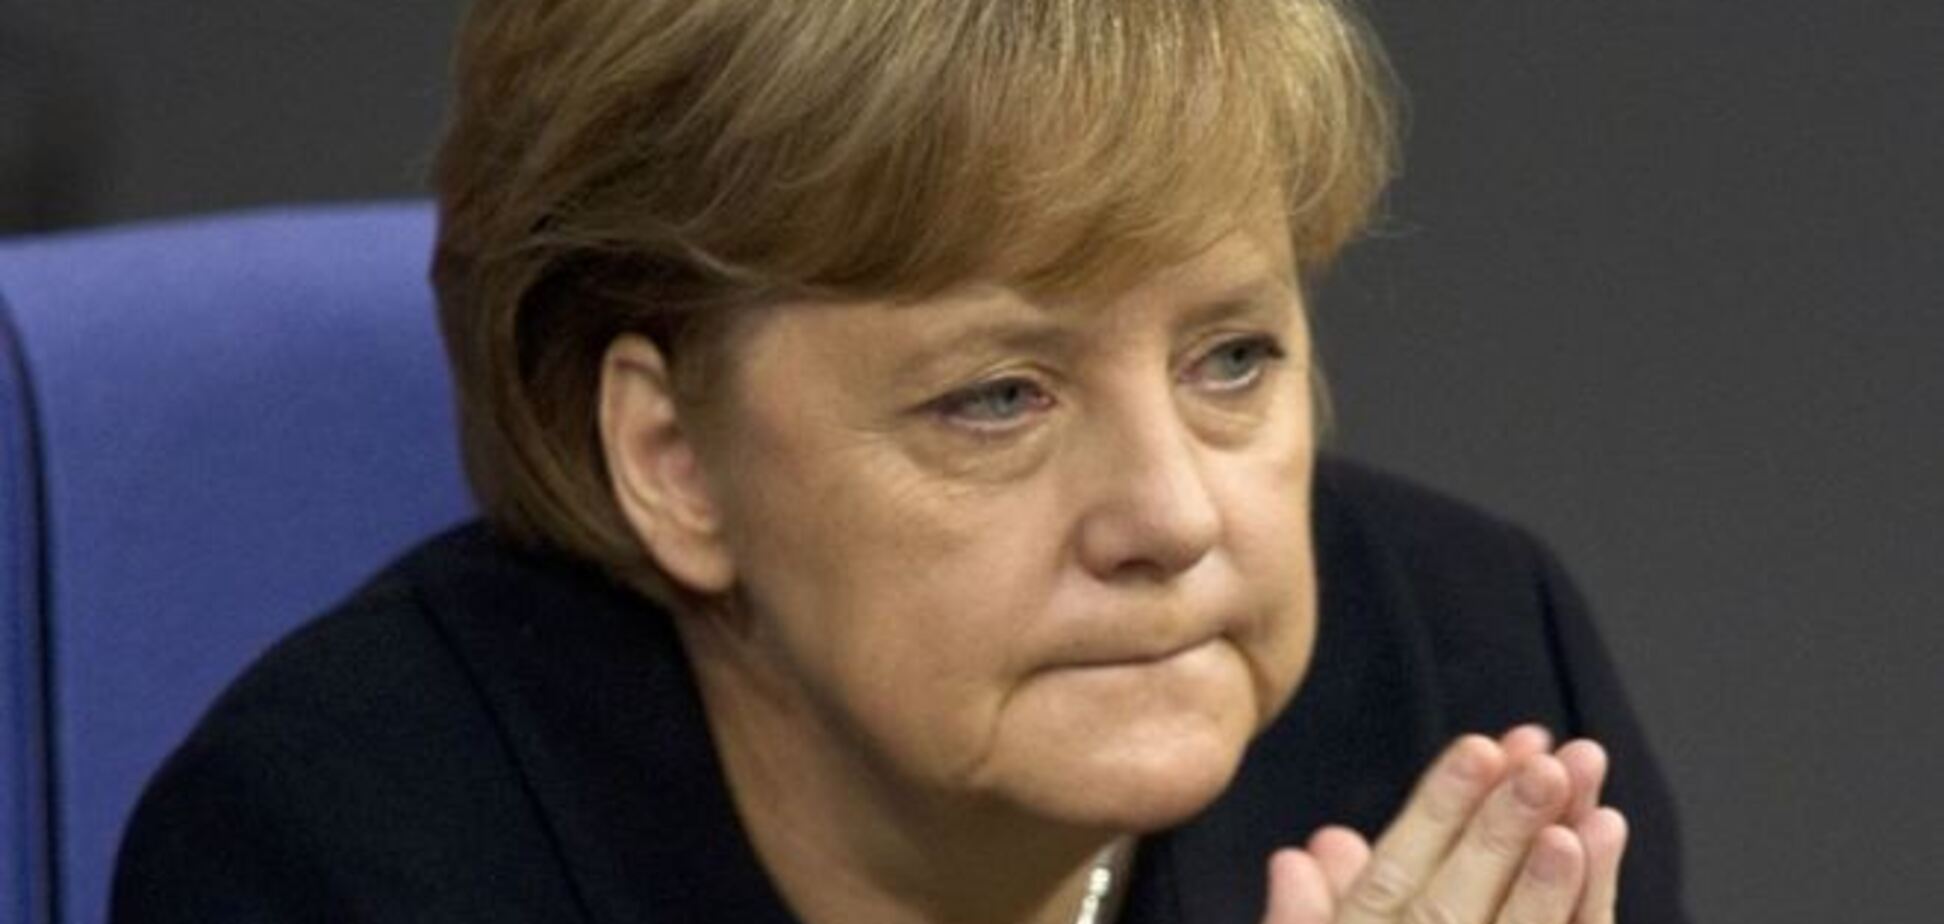 ЕС и США продолжат искать дипломатическое решение конфликта на Донбассе - Меркель